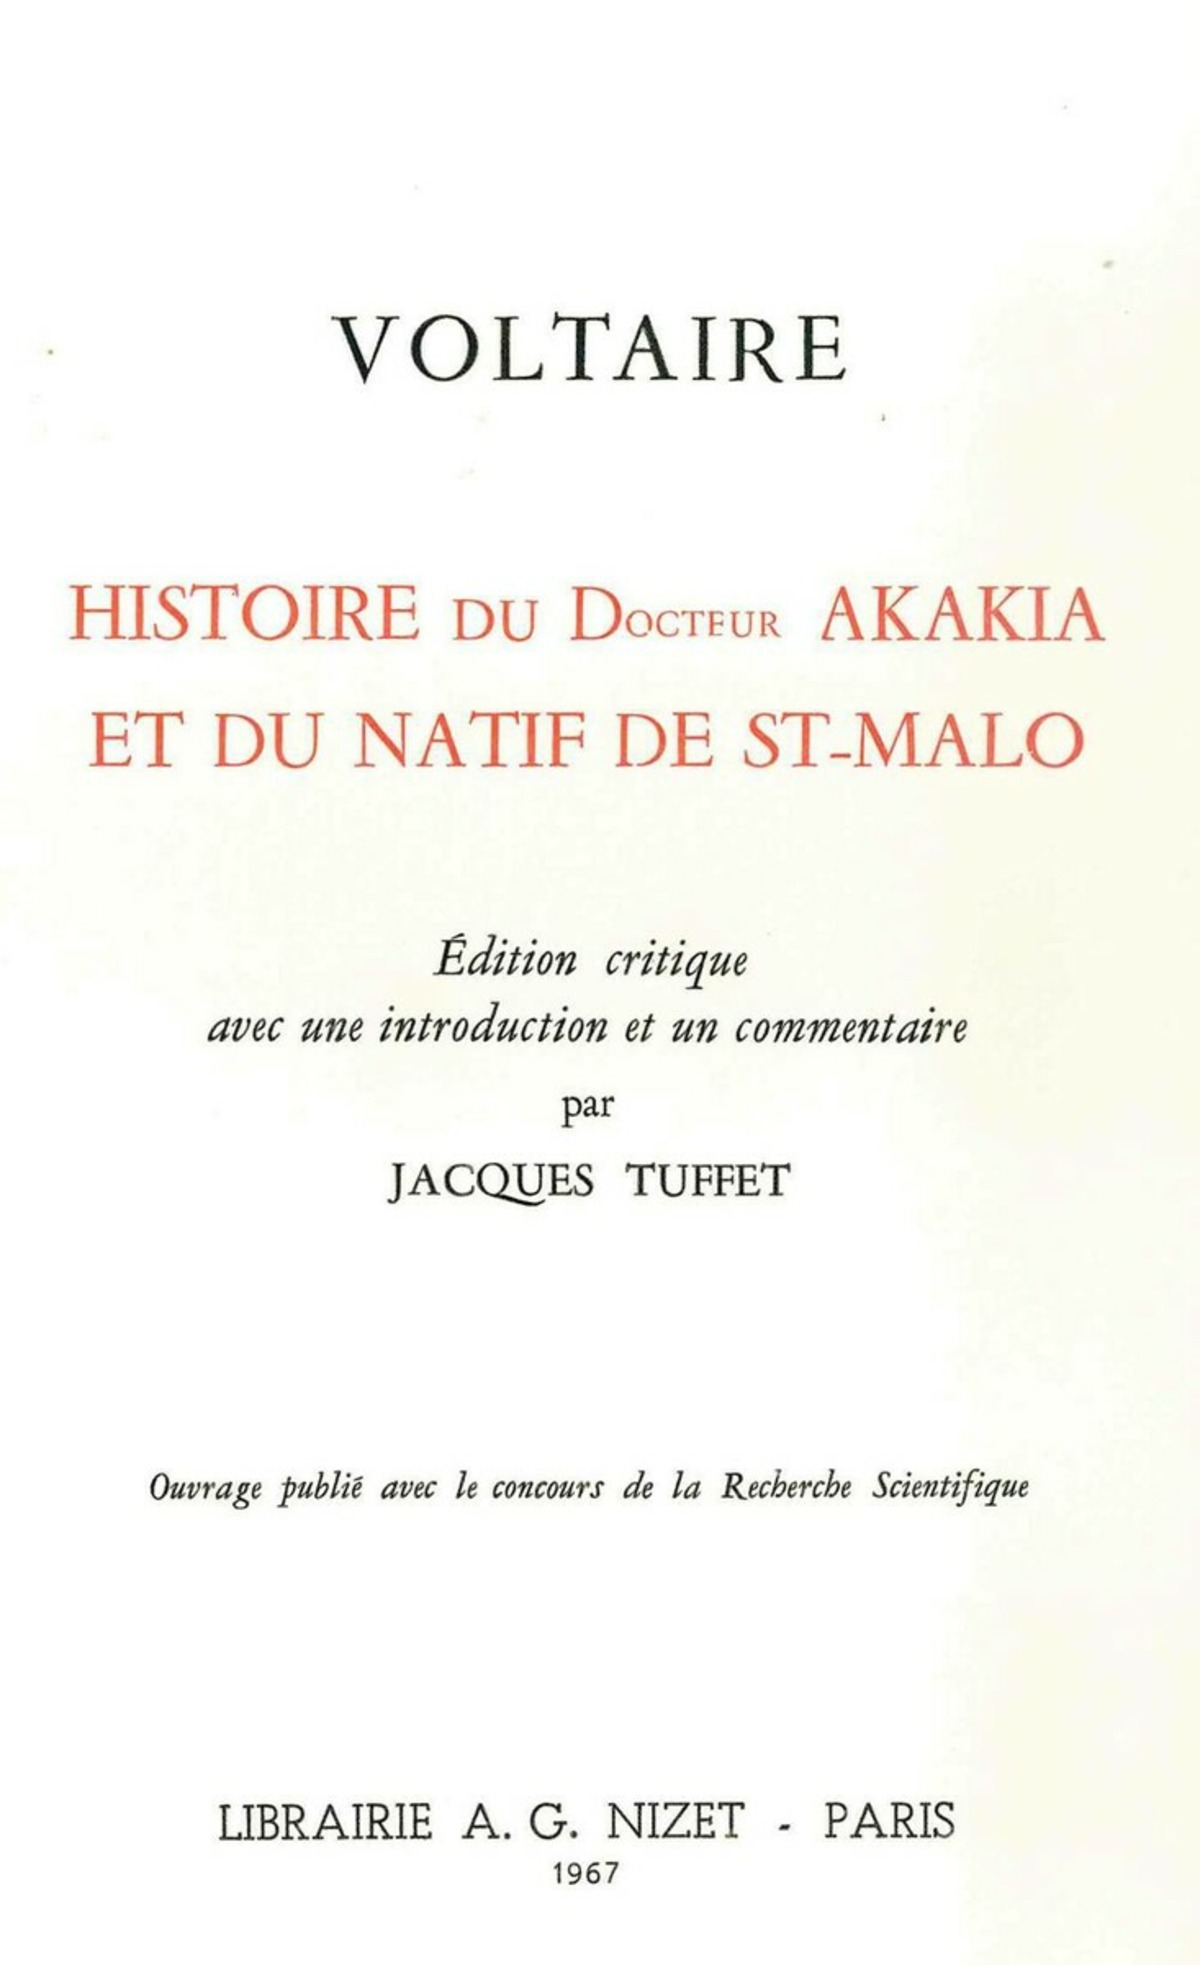 Histoire du docteur Akakia et du natif de St-Malo